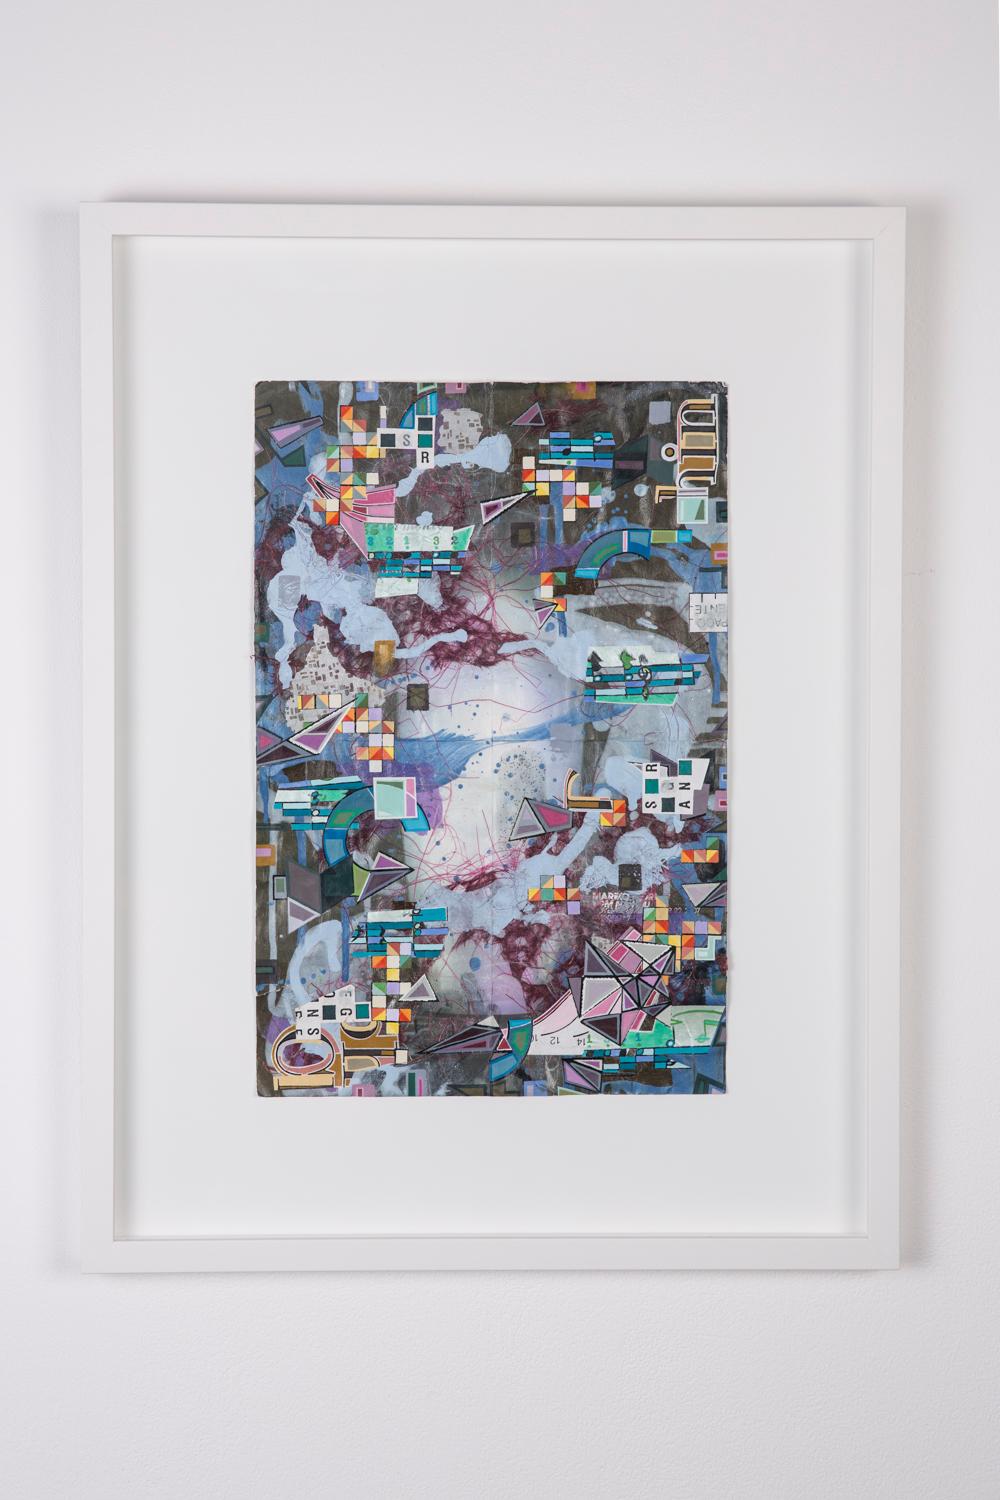 PRLS-1000 zeitgenössische abstrakte Collage, Mischtechnik, Lila, Blau, Multi (Abstrakt), Mixed Media Art, von Eric Mack